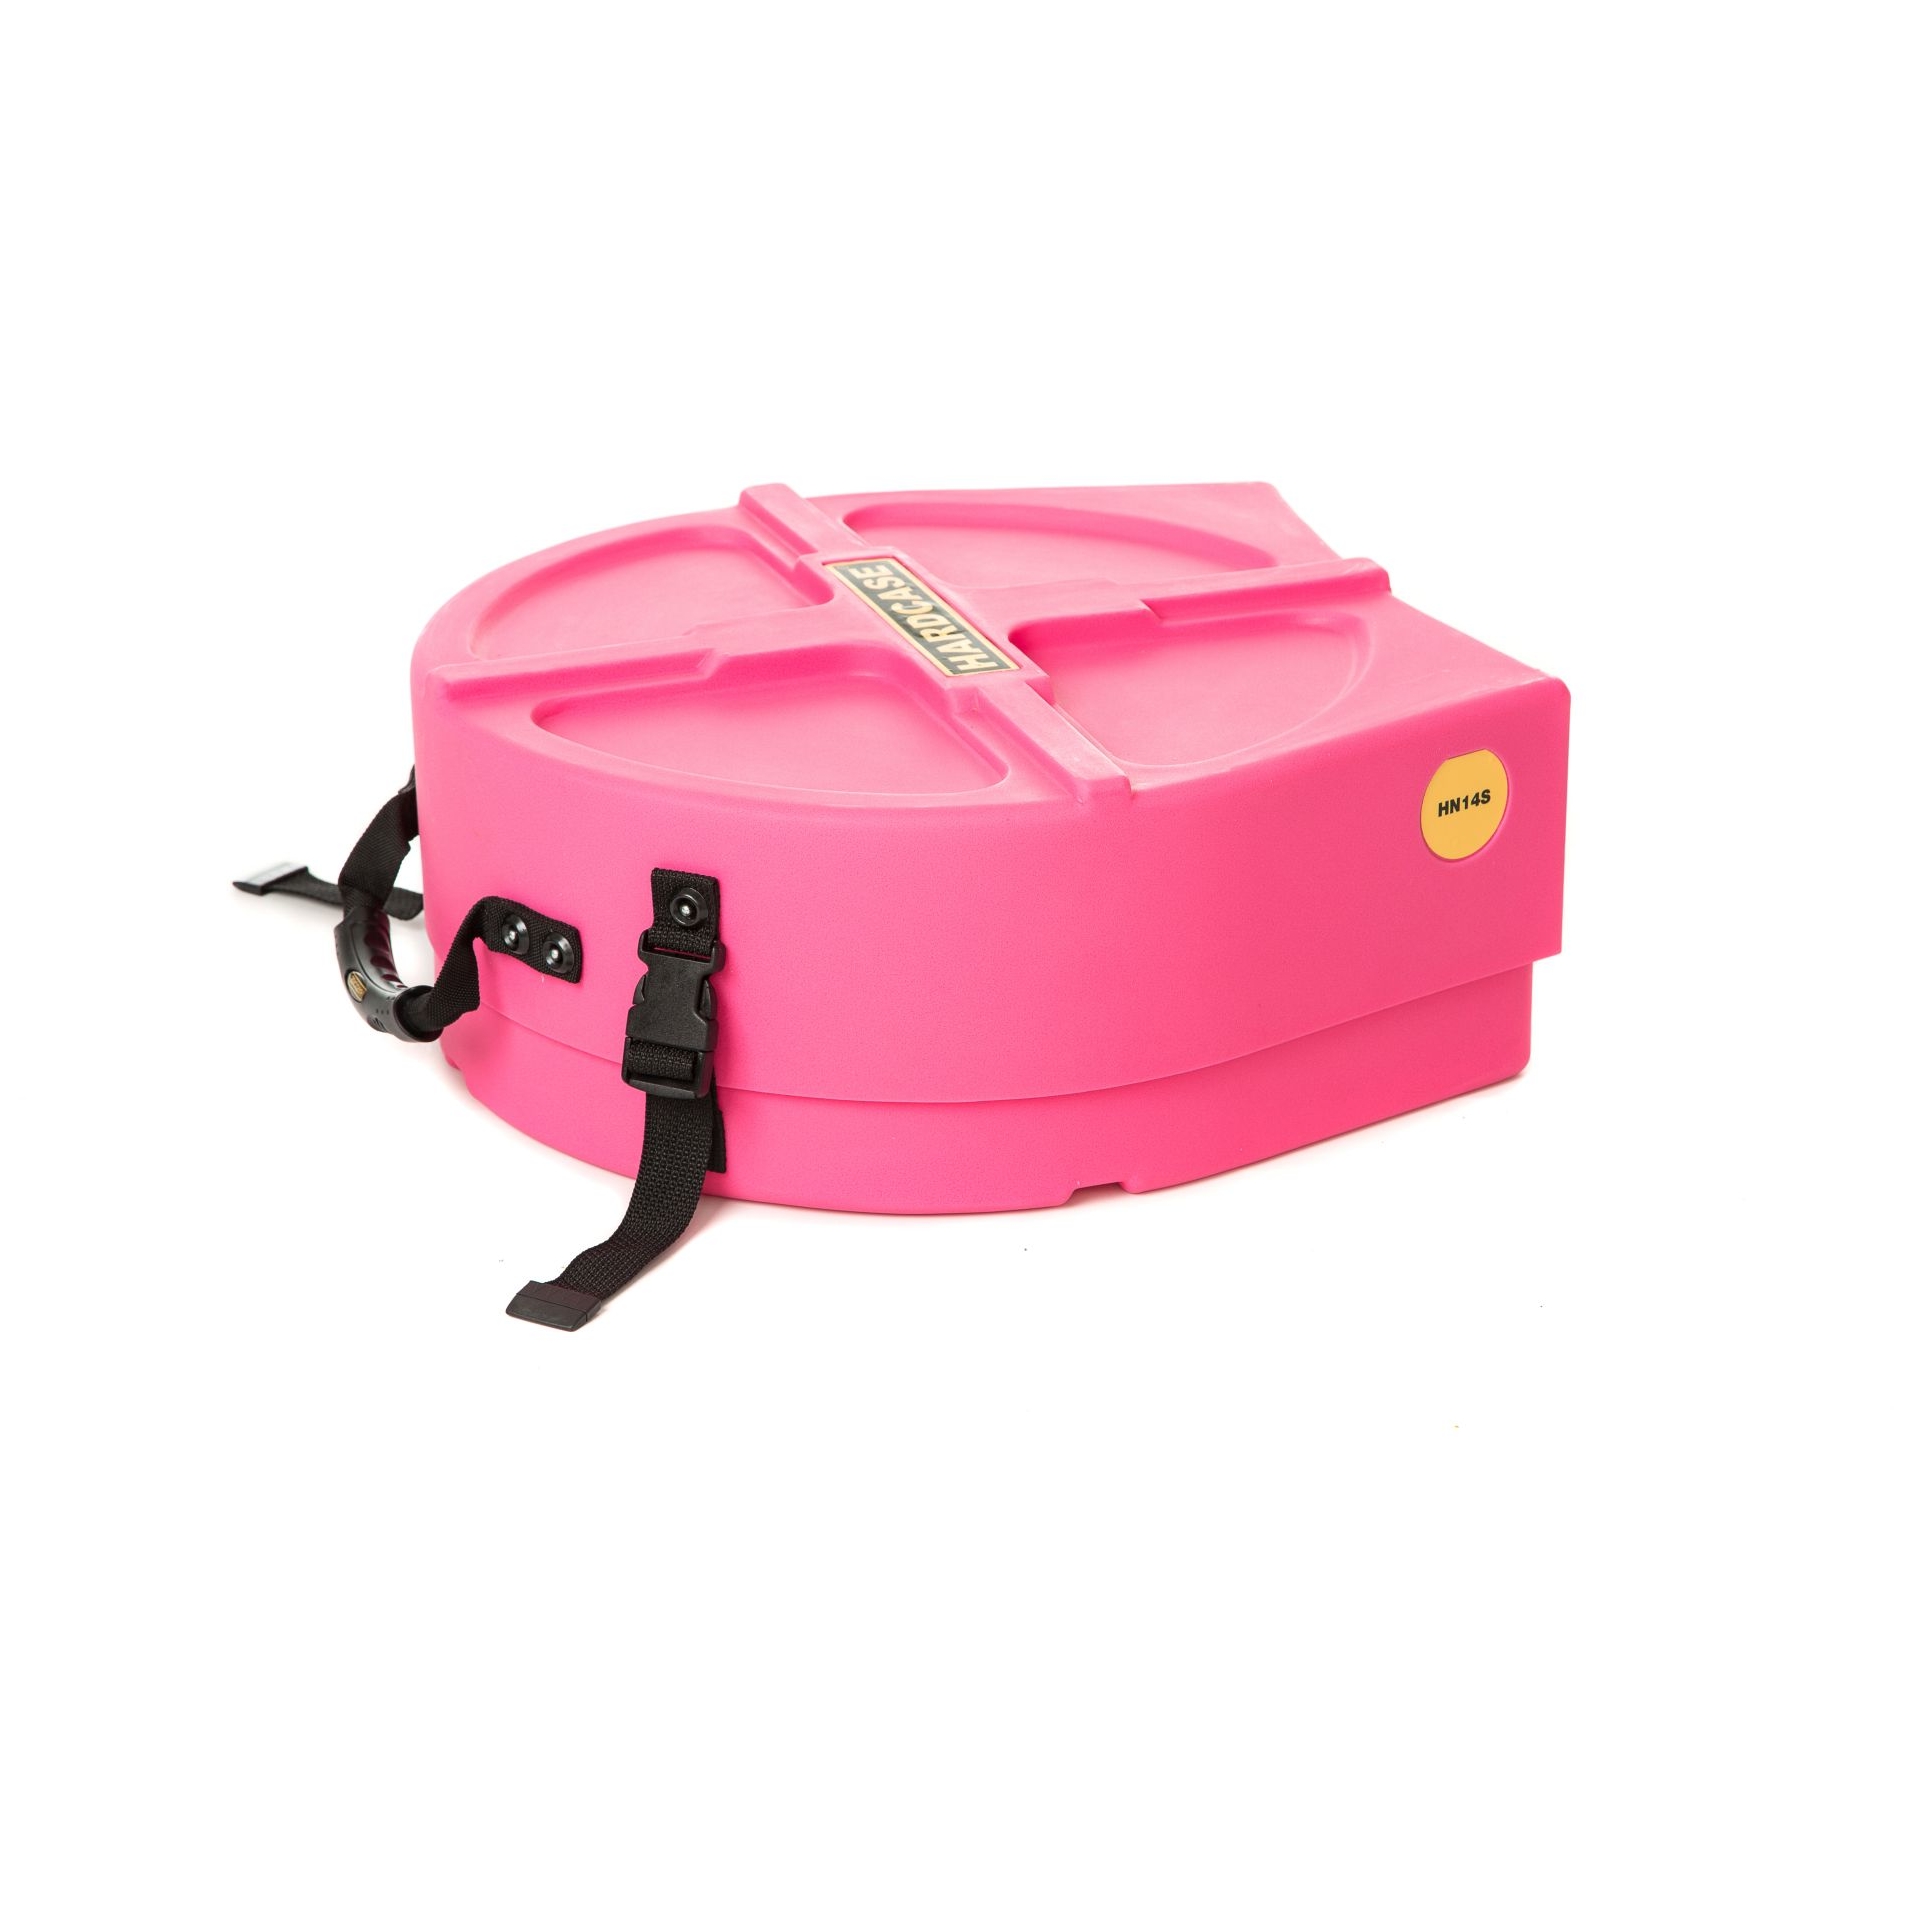 Hardcase HNL14S-P Snare Case 14" (5“ – 8“) - Pink / komplett gepolstert